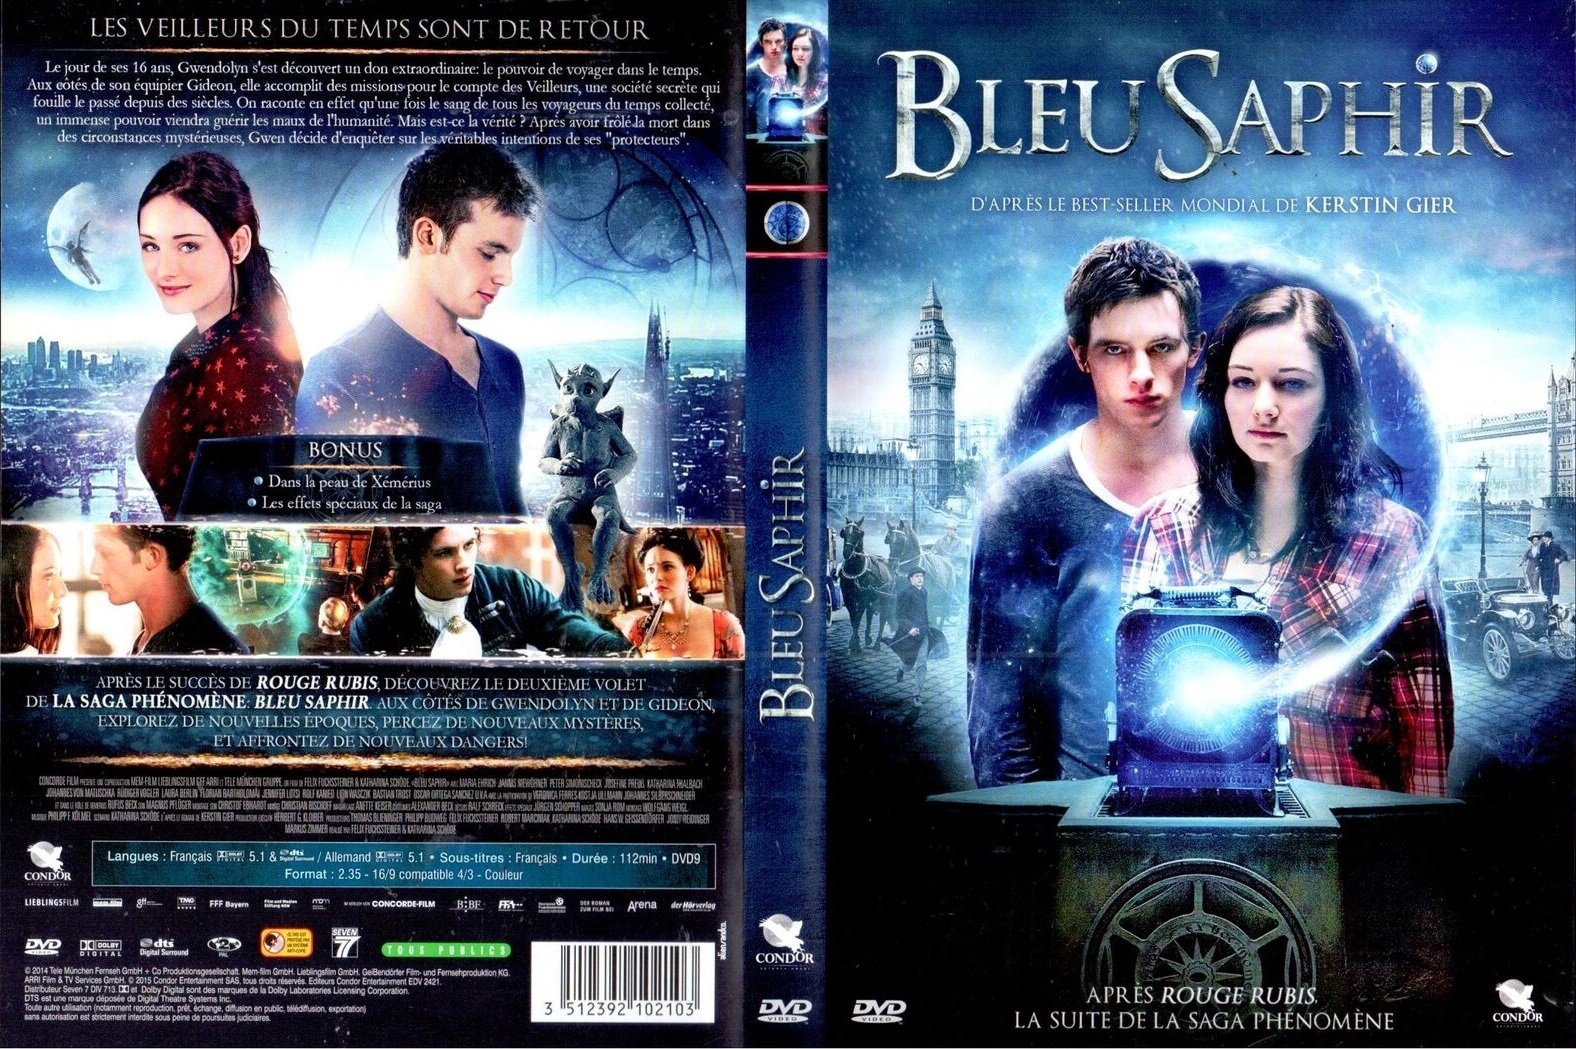 Jaquette DVD Bleu Saphir